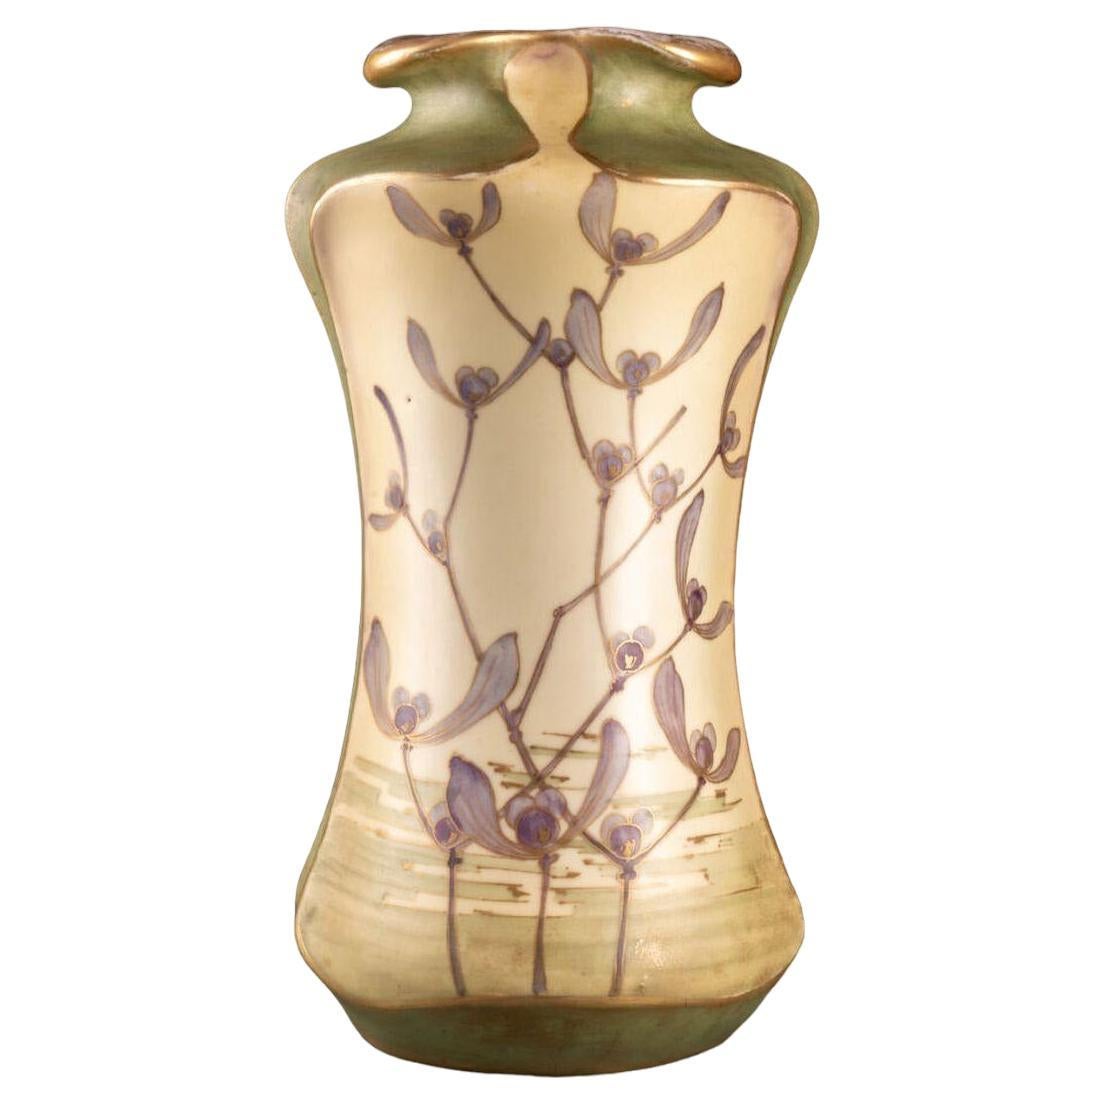 Art Nouveau ceramic vase with Birds Flowers by Turn Teplitz Amphora Austria 1900 For Sale